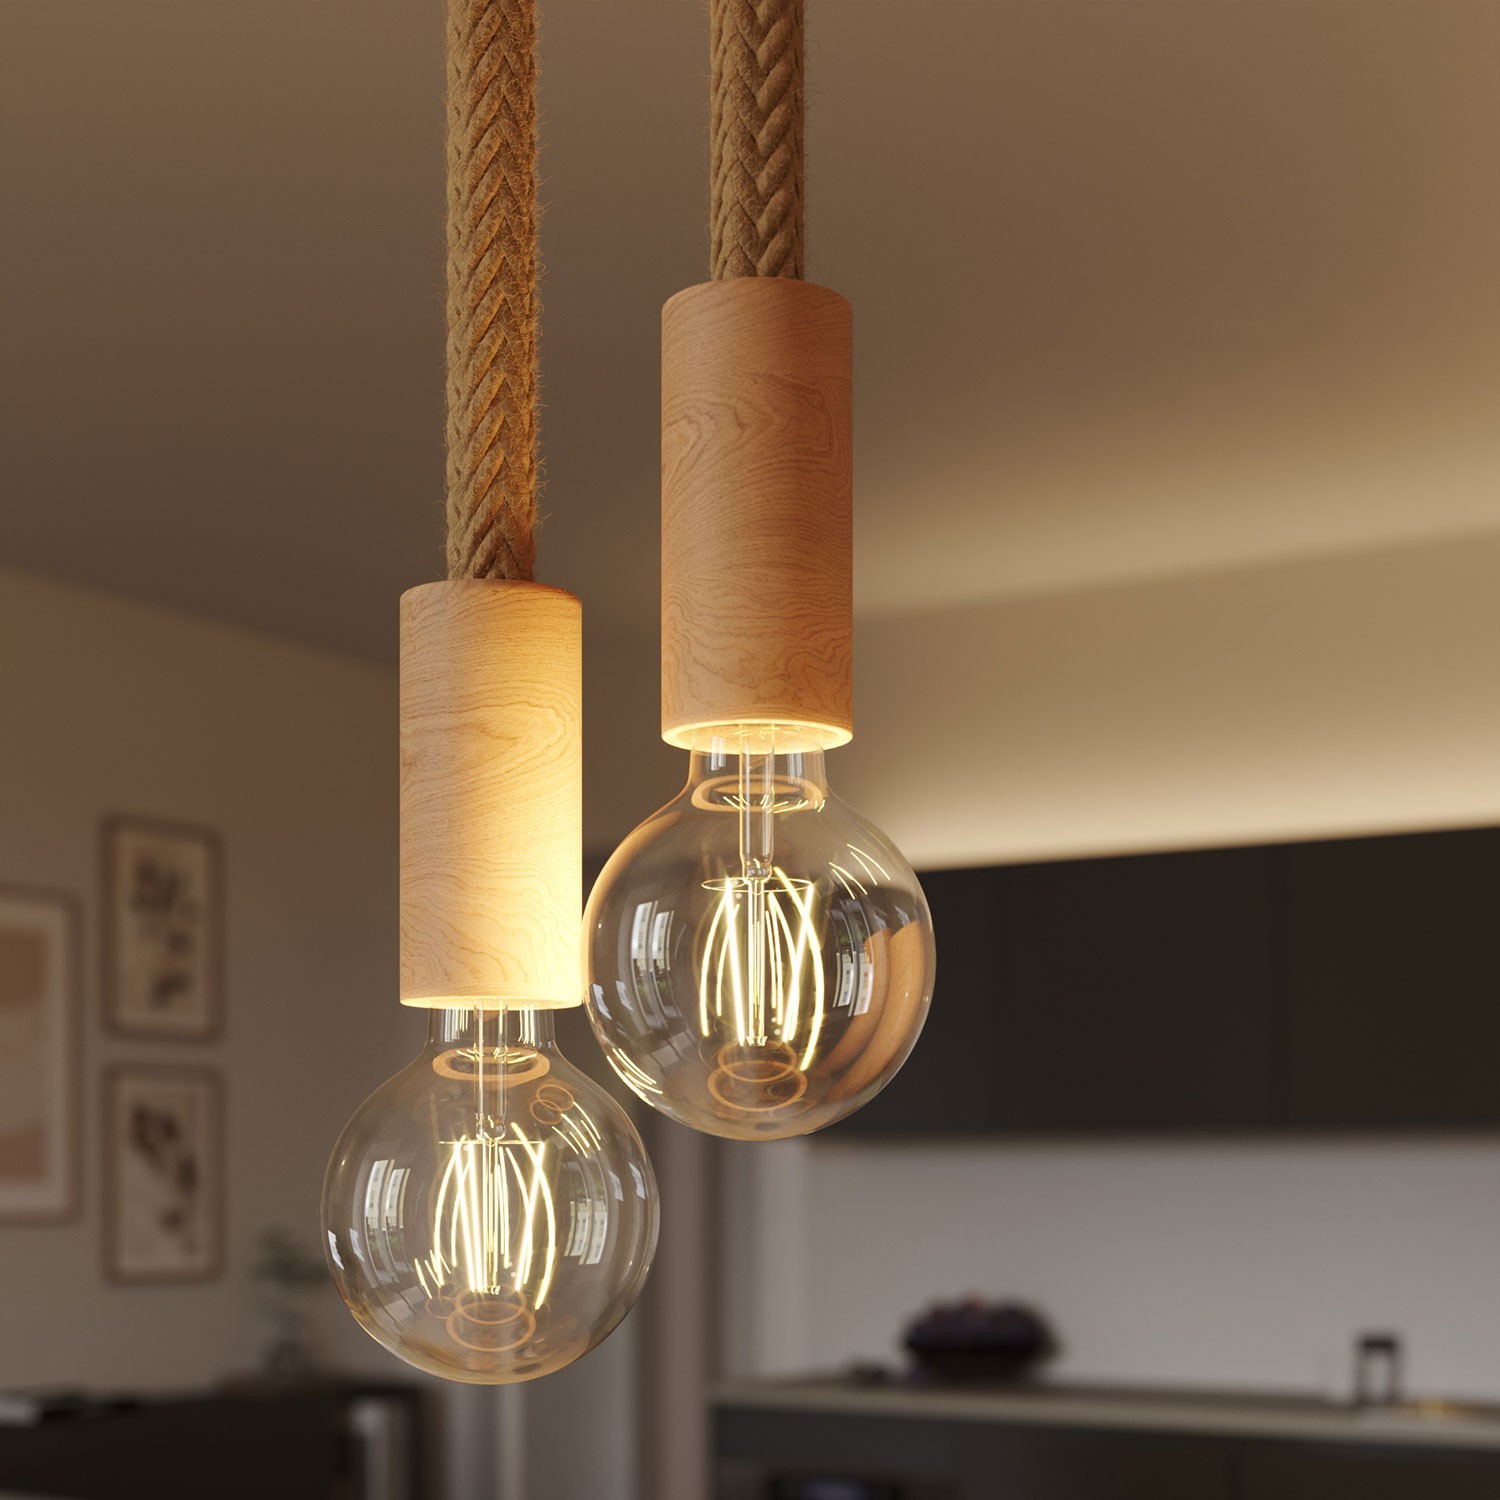 Hanglamp met lichtpunten, touw en houten afwerking